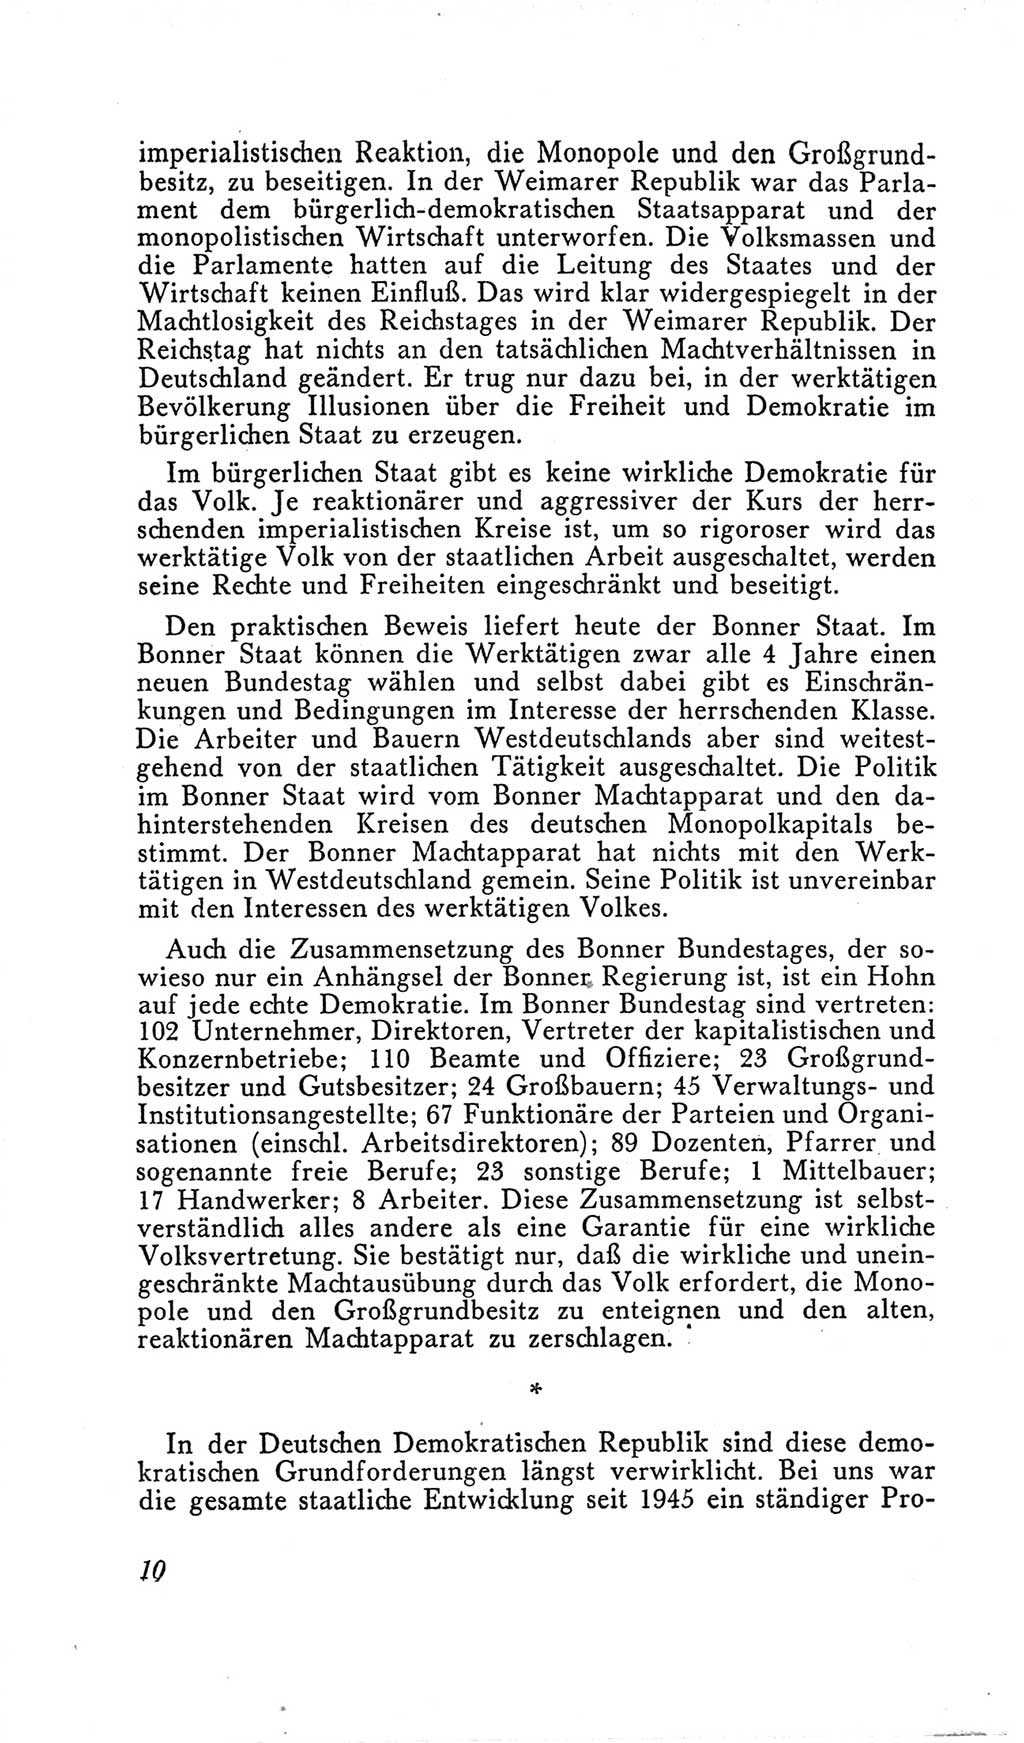 Handbuch der Volkskammer (VK) der Deutschen Demokratischen Republik (DDR), 2. Wahlperiode 1954-1958, Seite 10 (Hdb. VK. DDR, 2. WP. 1954-1958, S. 10)